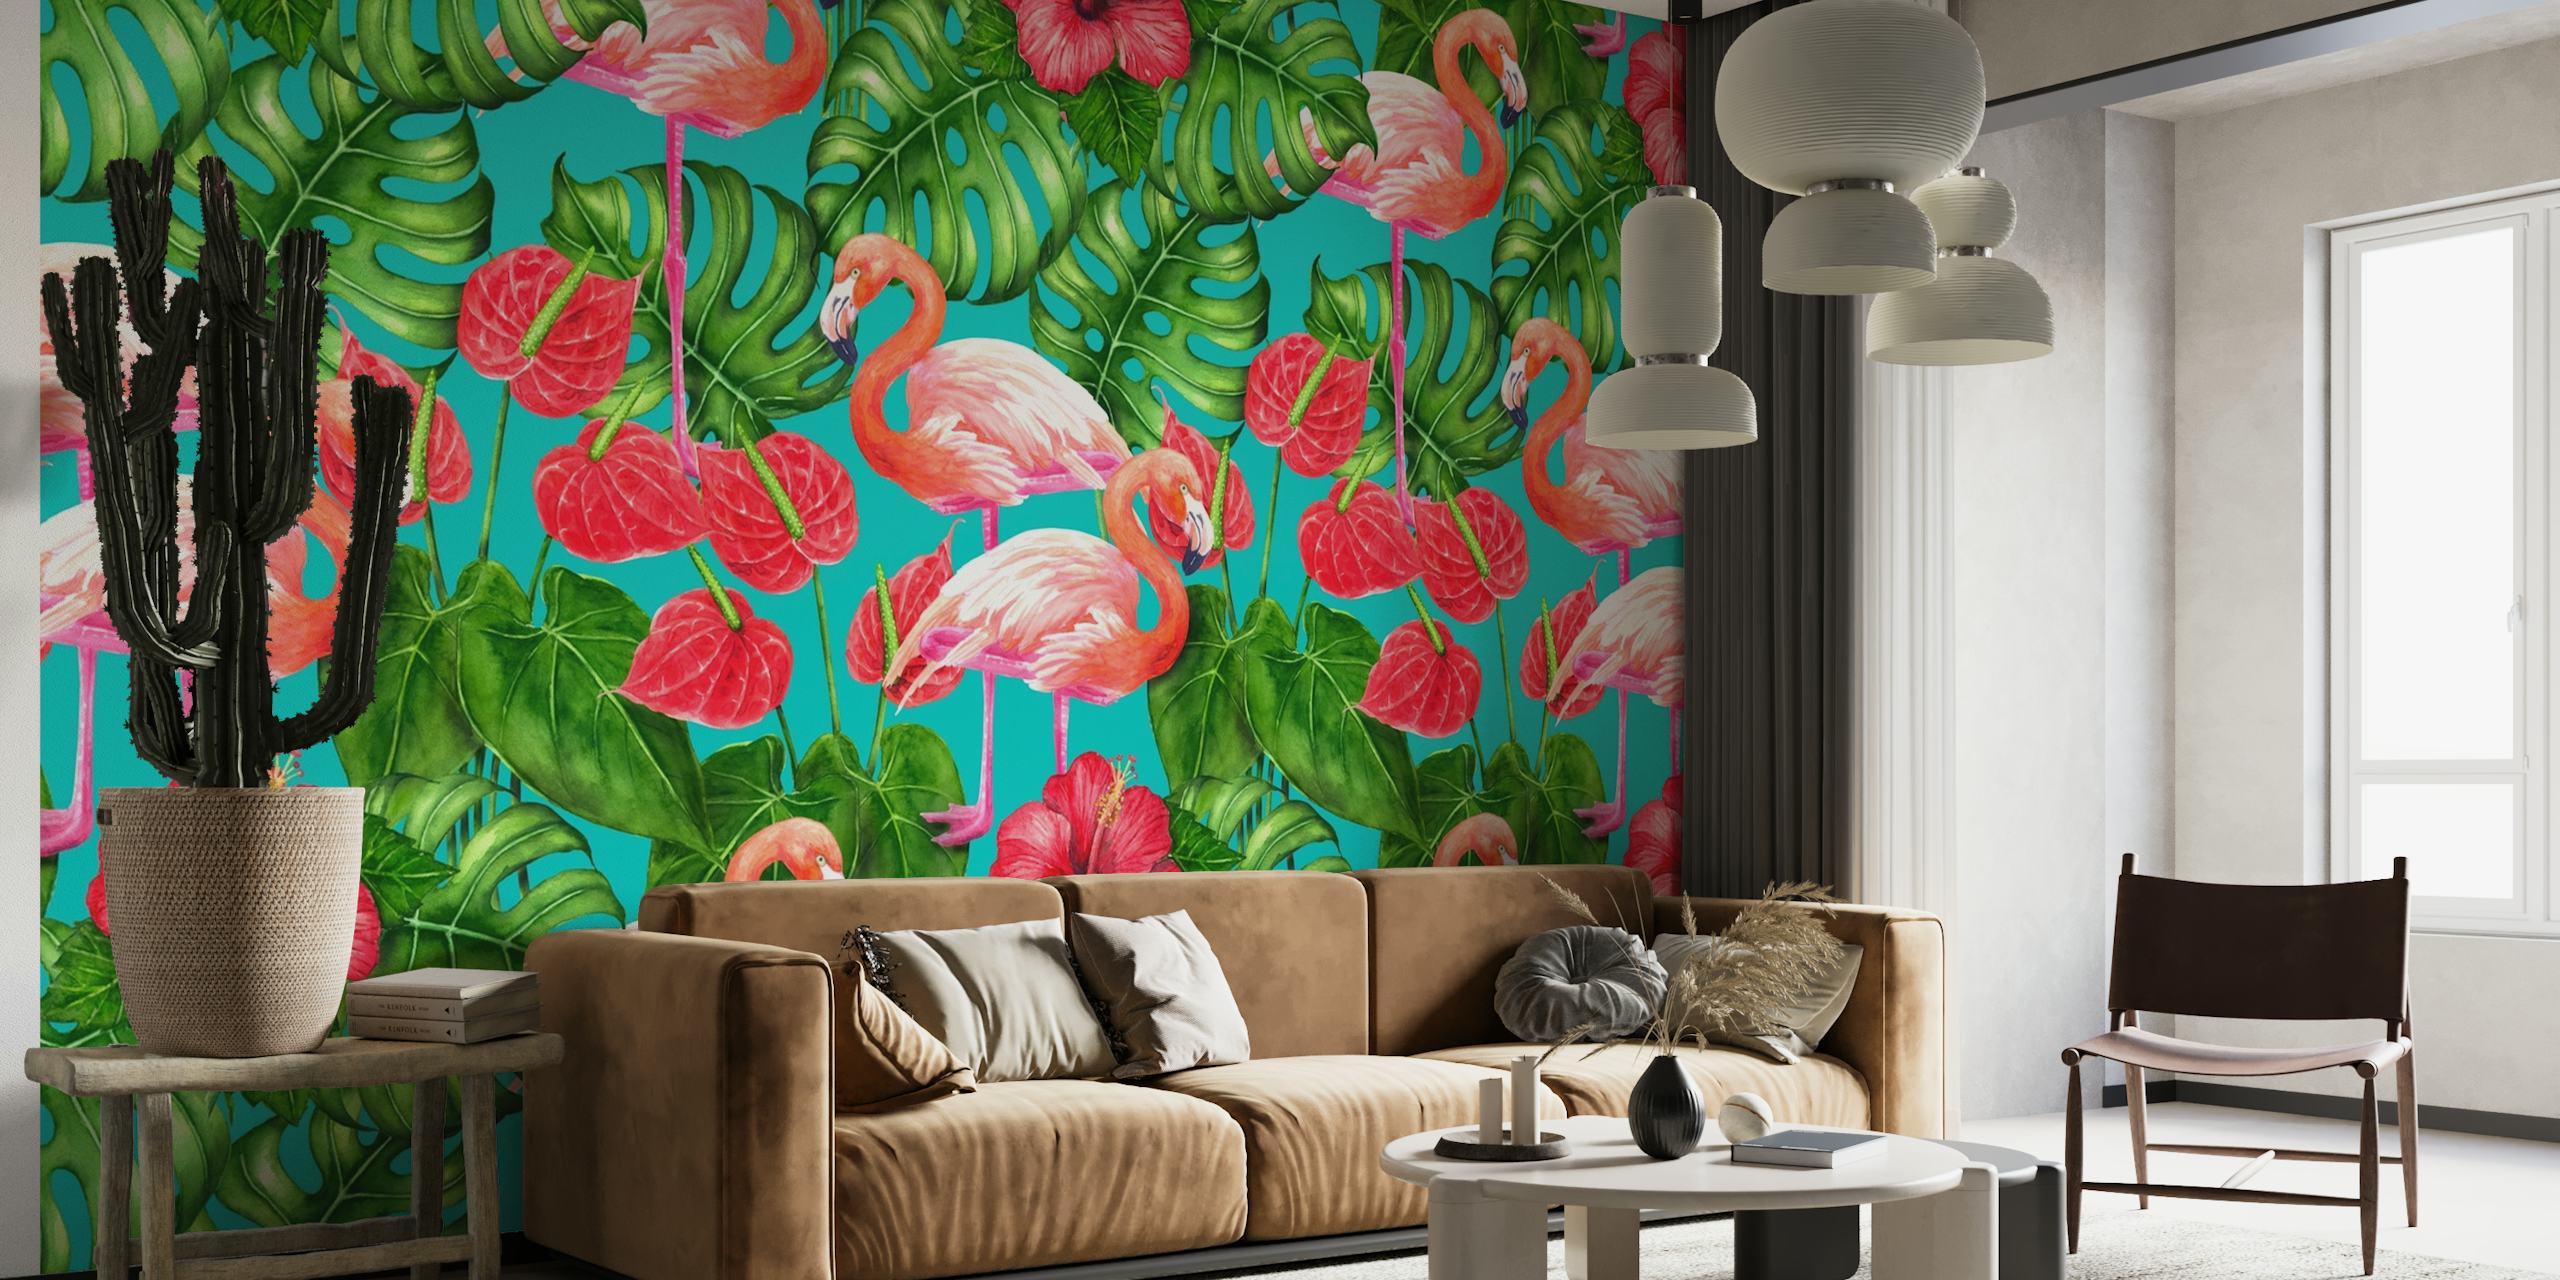 Flamingo and tropical garden behang